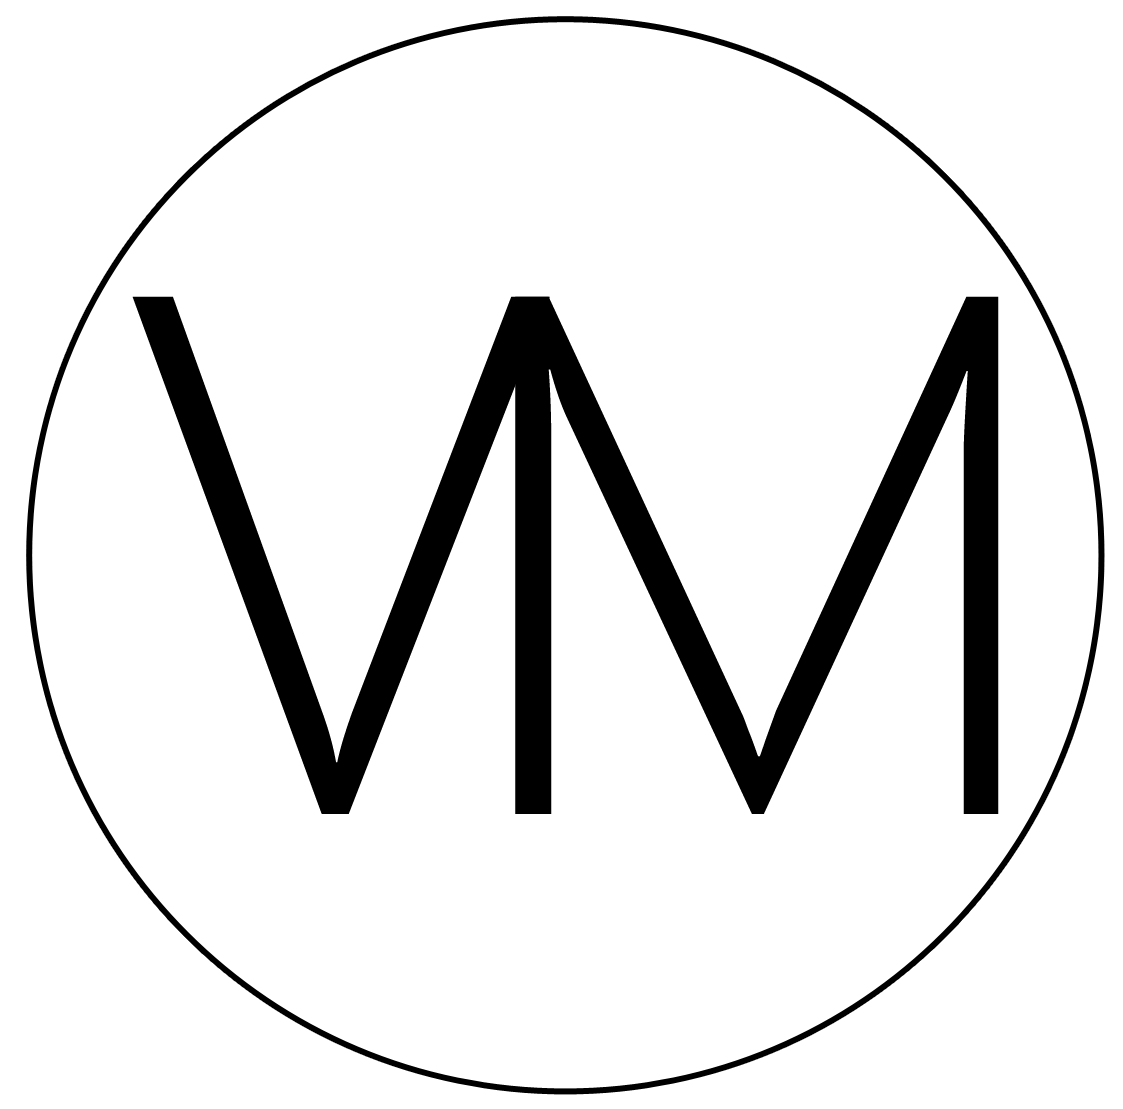 Logo vnovom - Návrhy interiérov